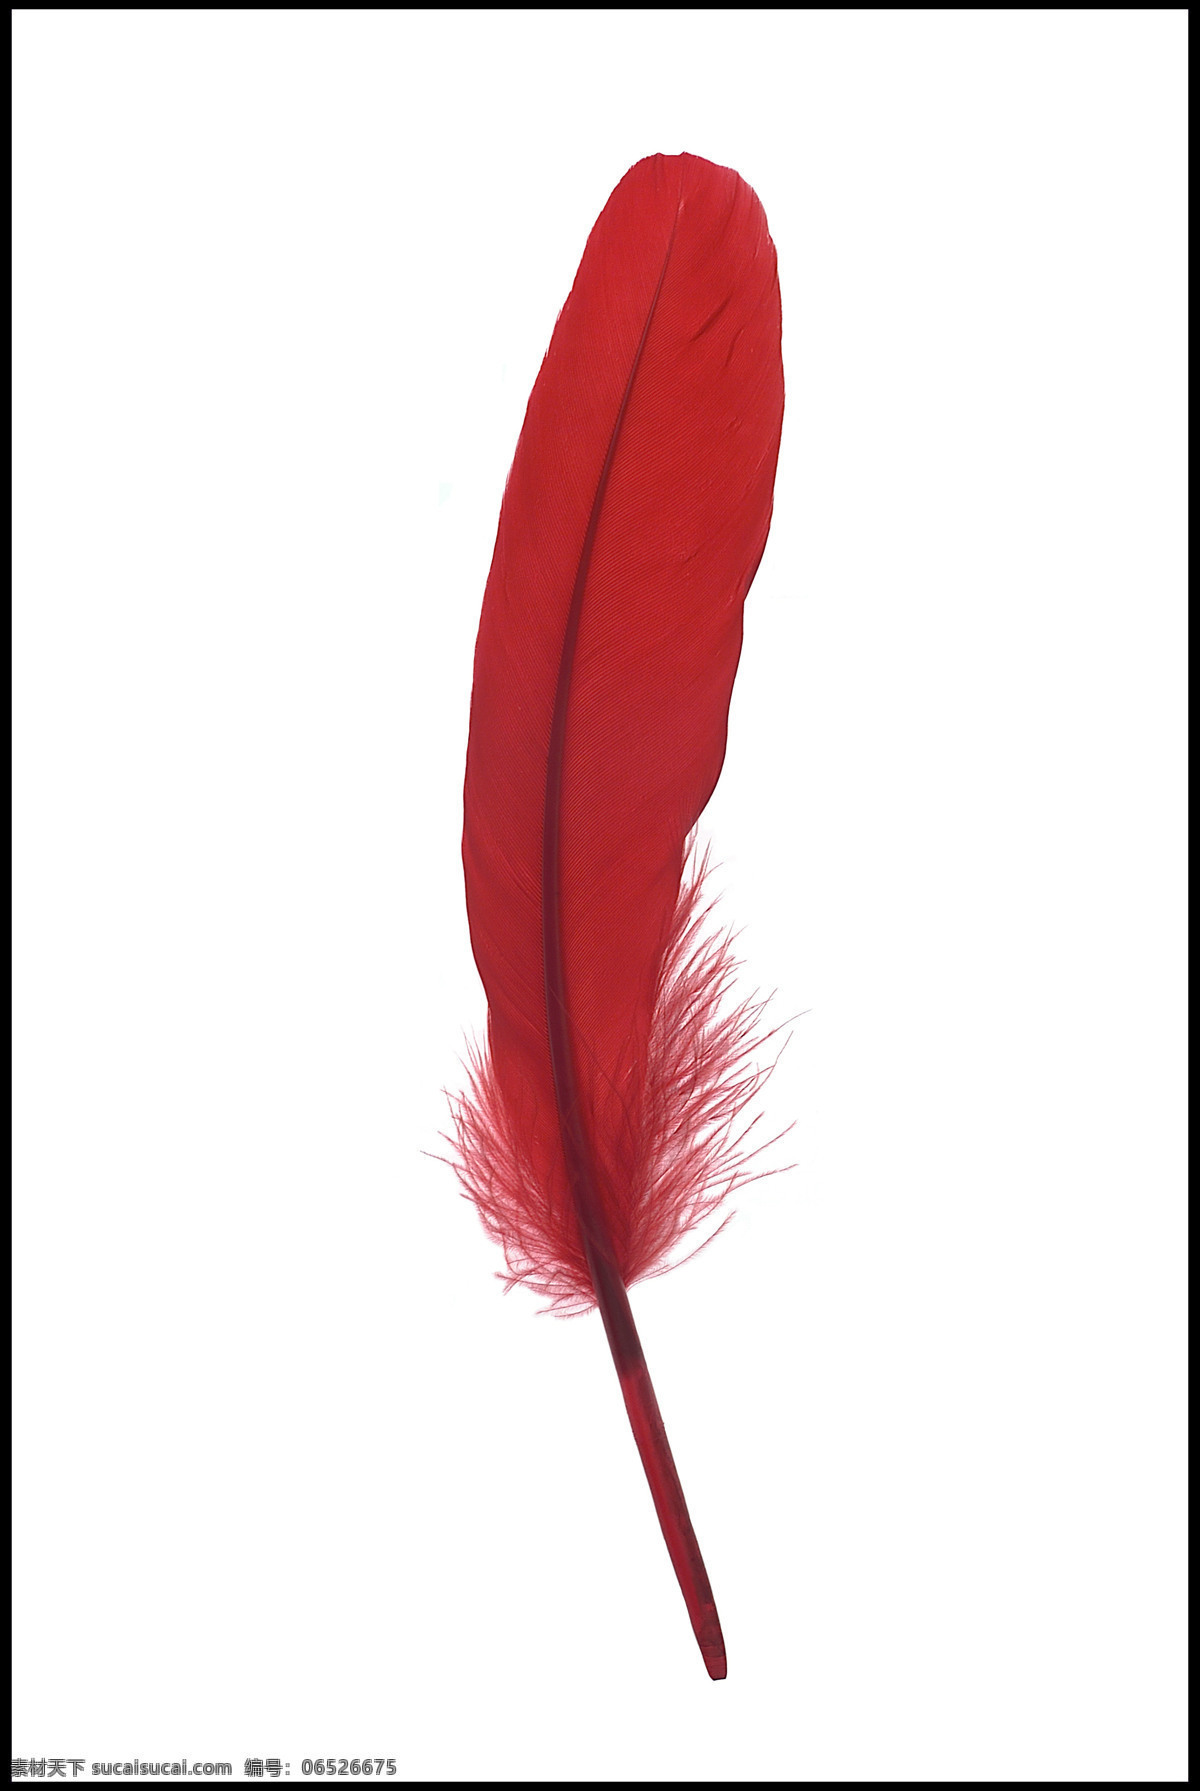 精美羽毛 精美 紅色羽毛 静物 写真 摄影图库 生物世界 鸟类 羽毛之美